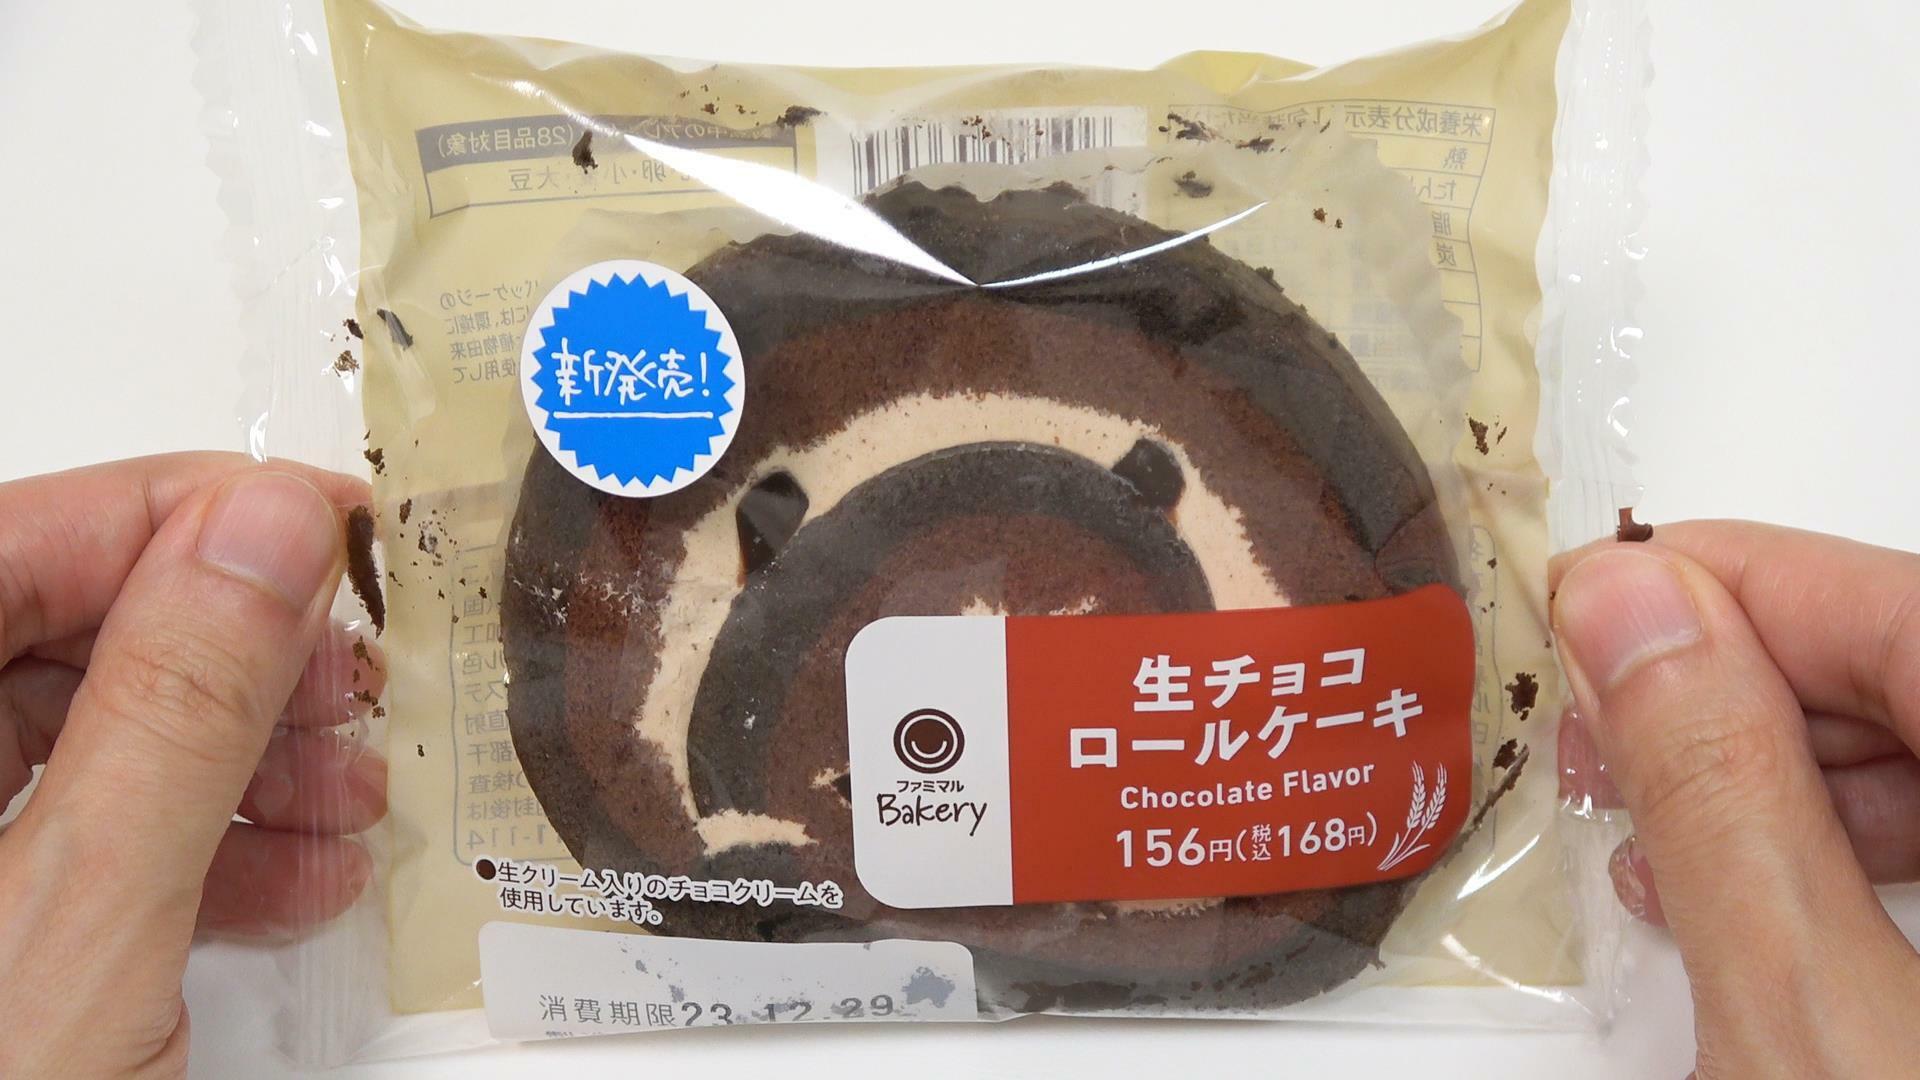 ファミマ新発売の生チョコロールケーキ